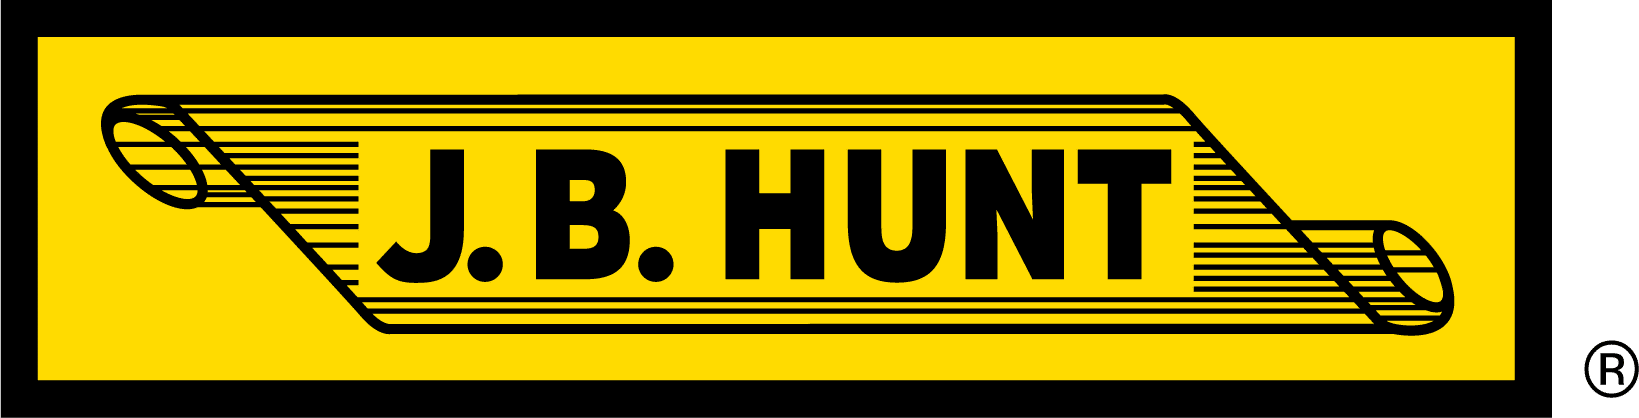 JB Hunt Enterprise logo